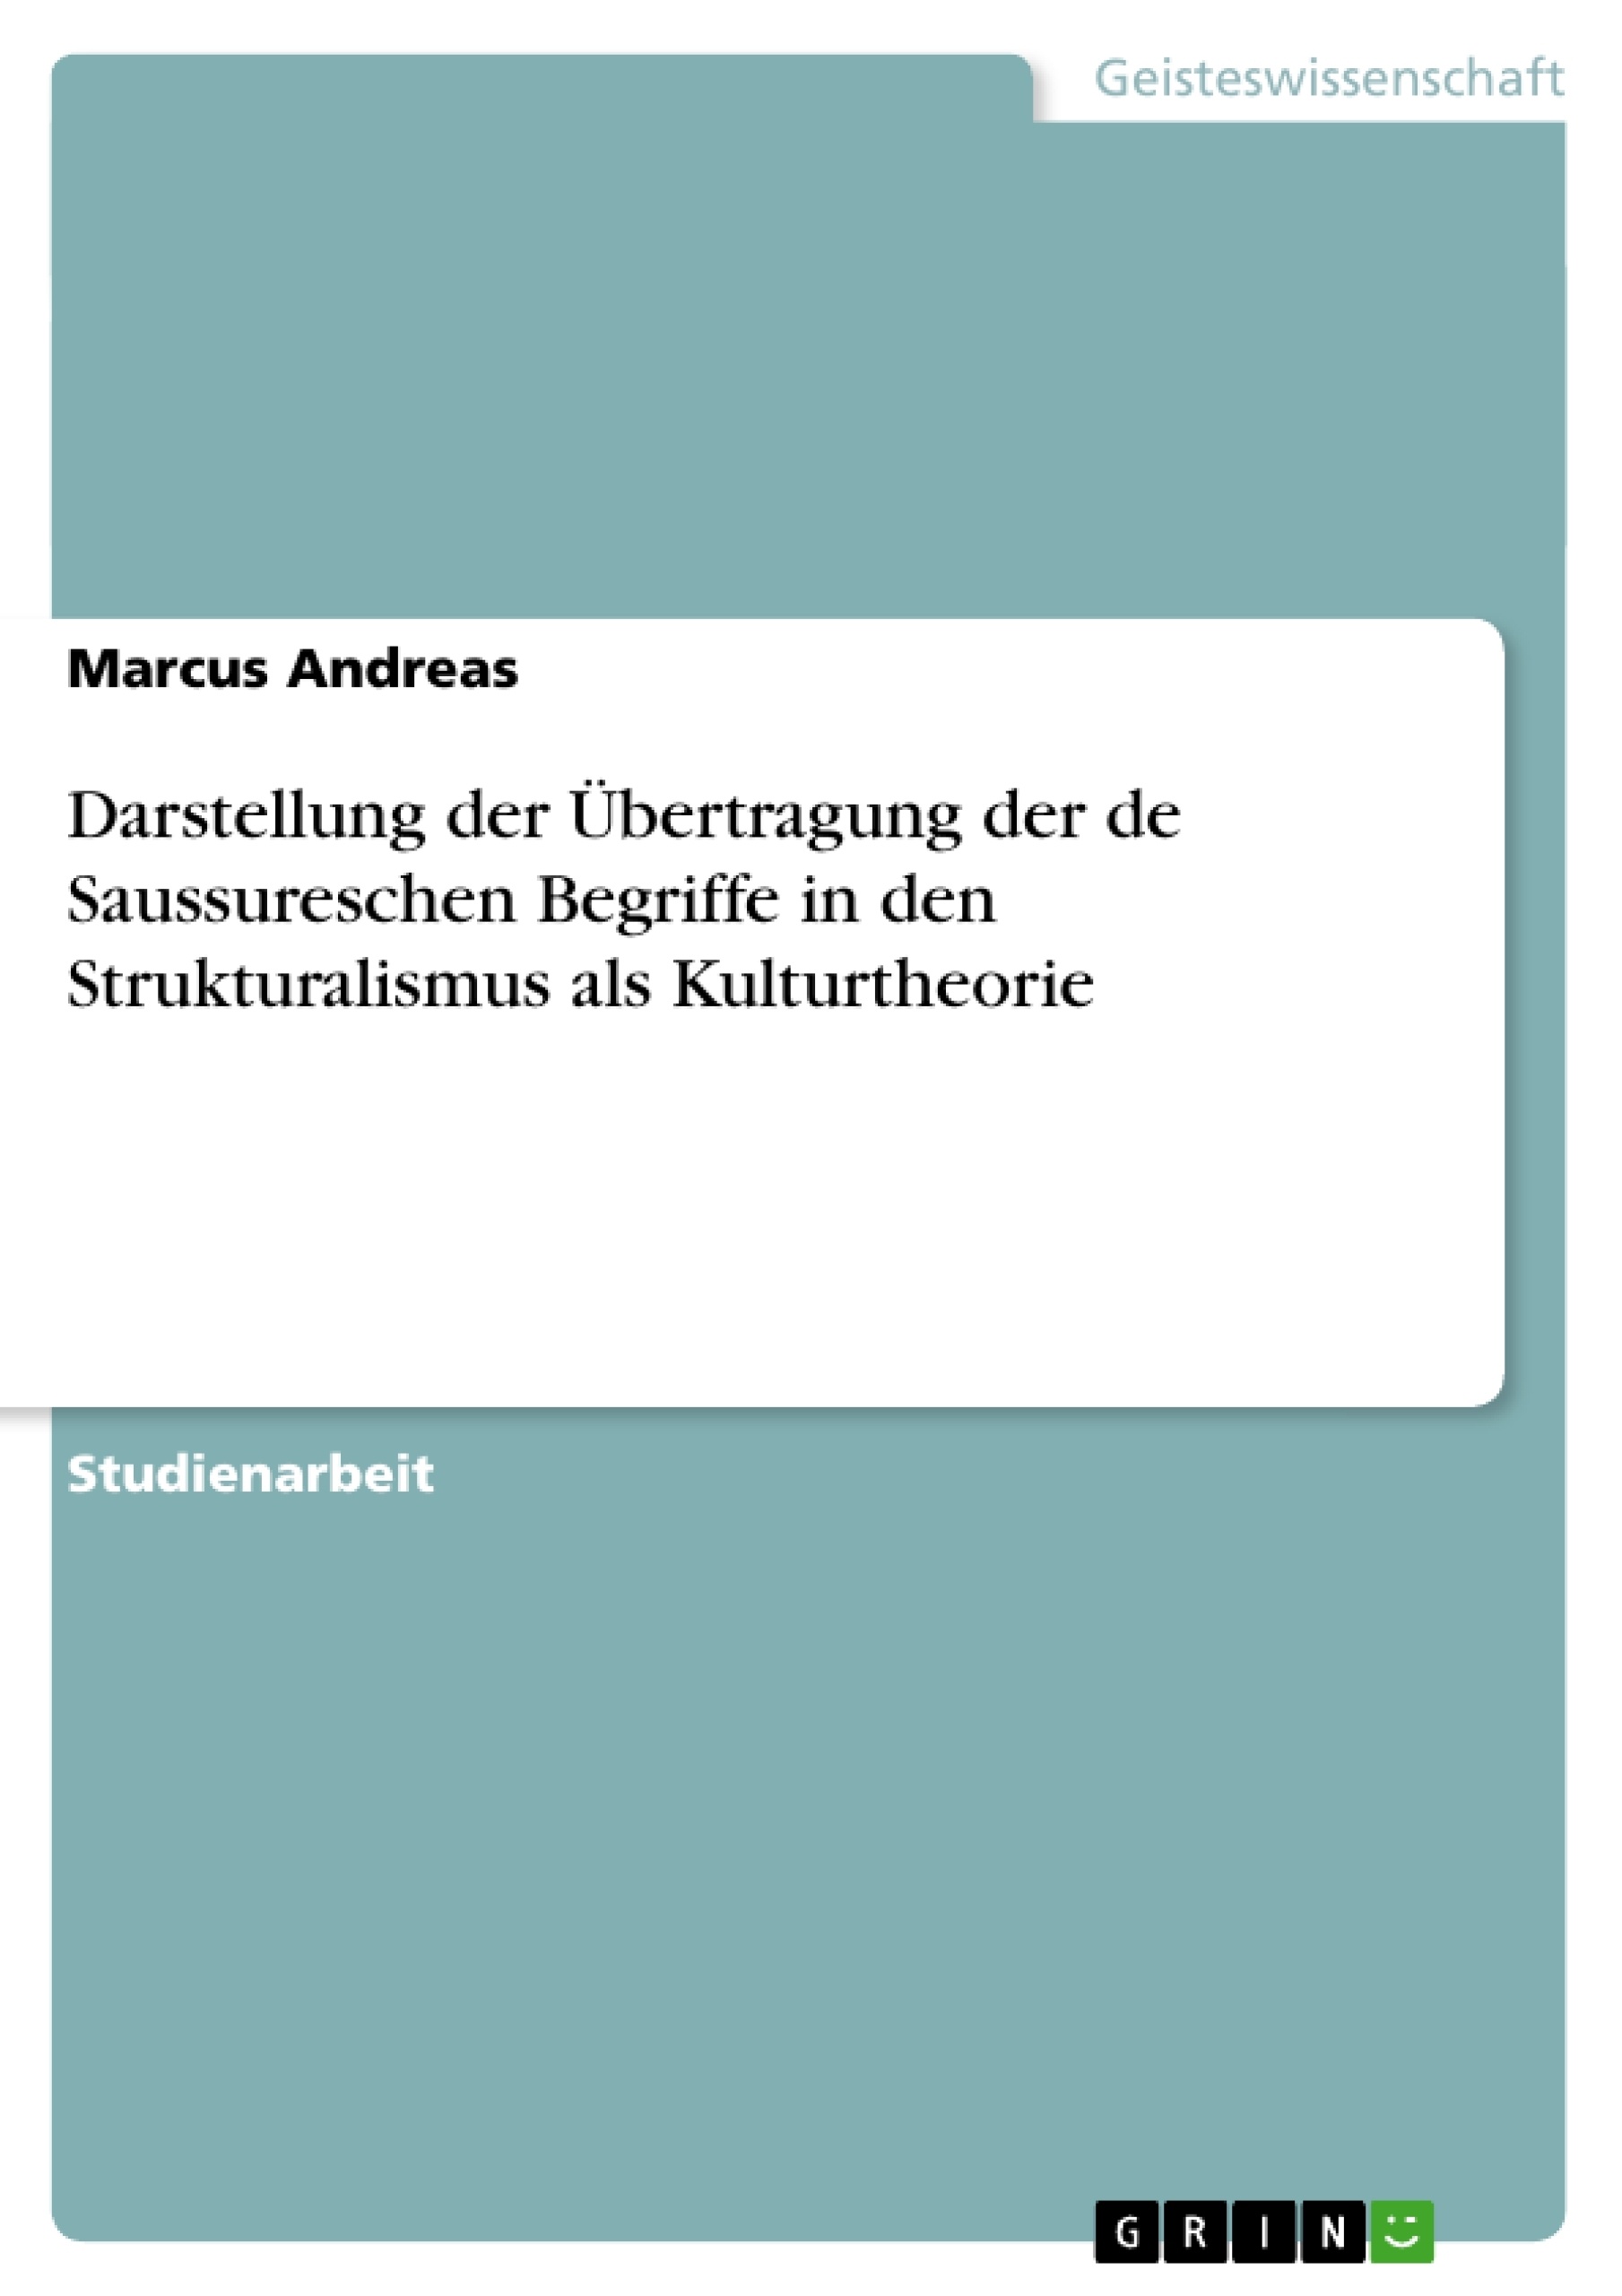 Title: Darstellung der Übertragung der de Saussureschen Begriffe in den Strukturalismus als Kulturtheorie